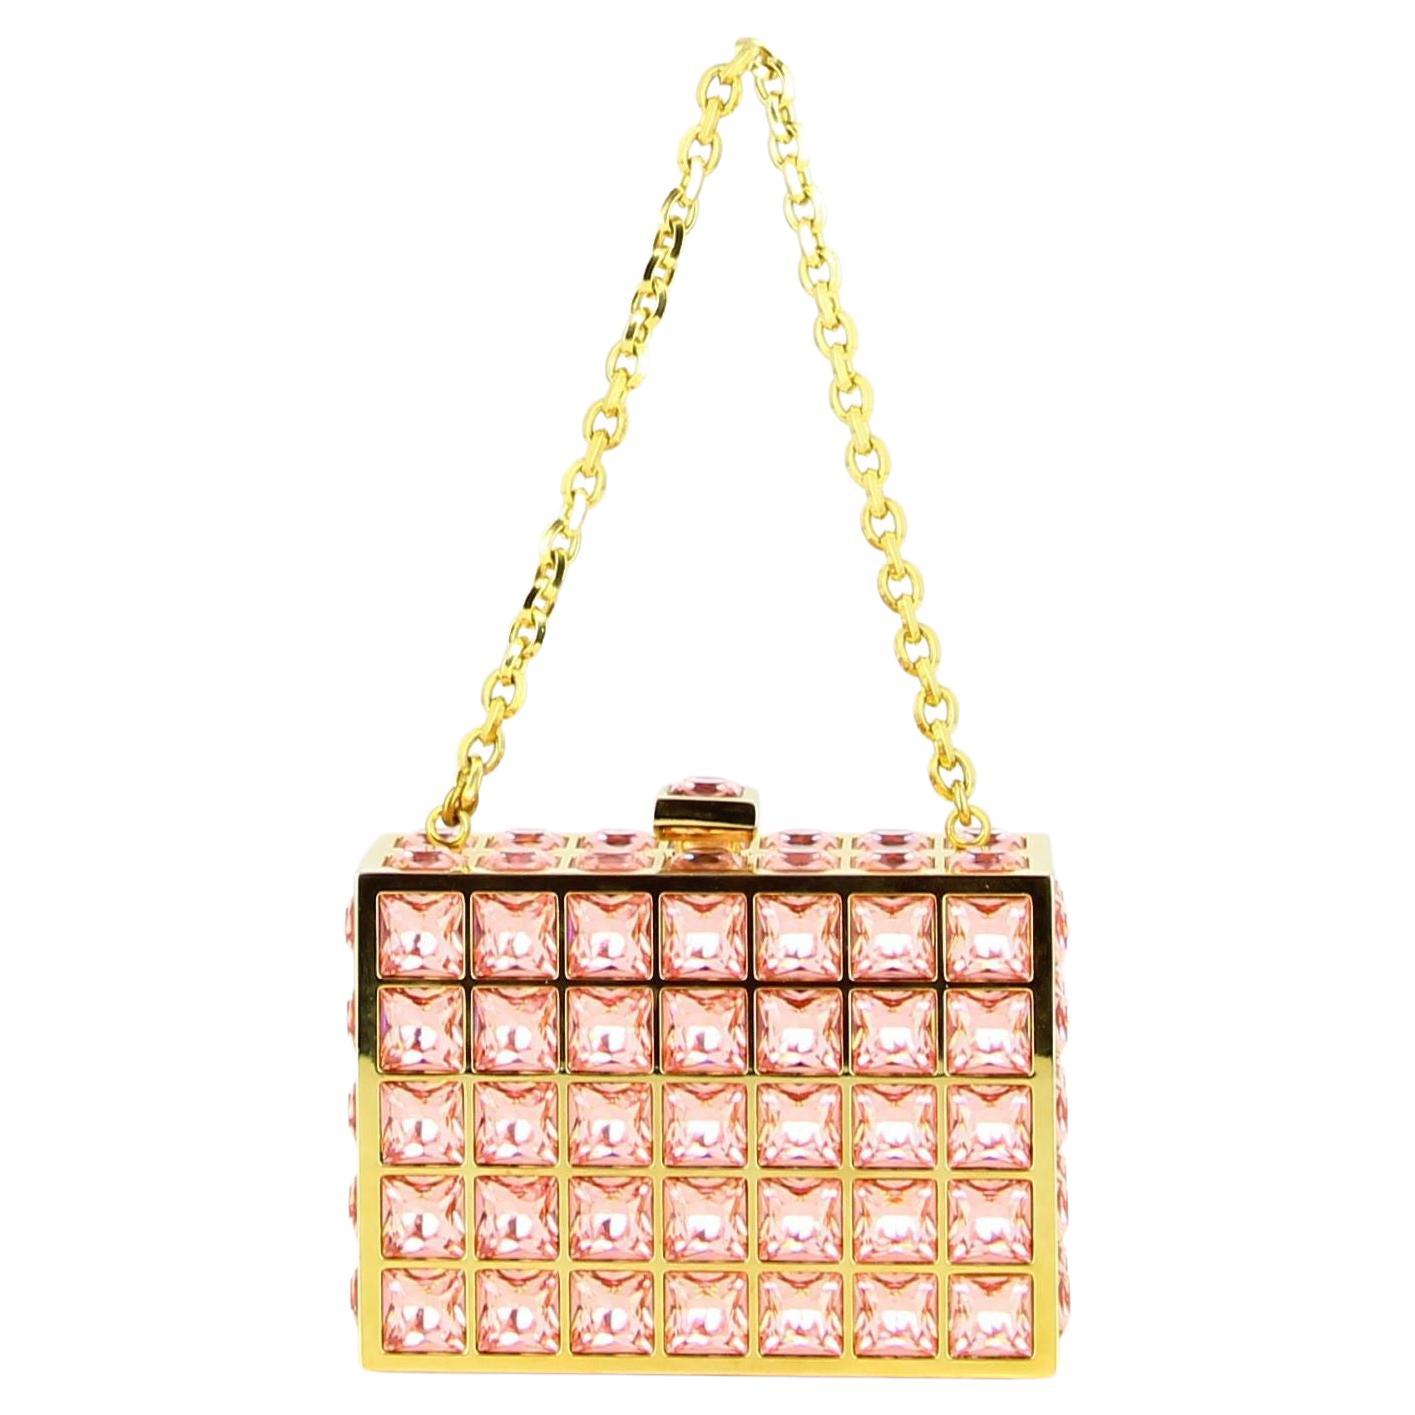 Judith Leiber Handbag Pink And Golden 